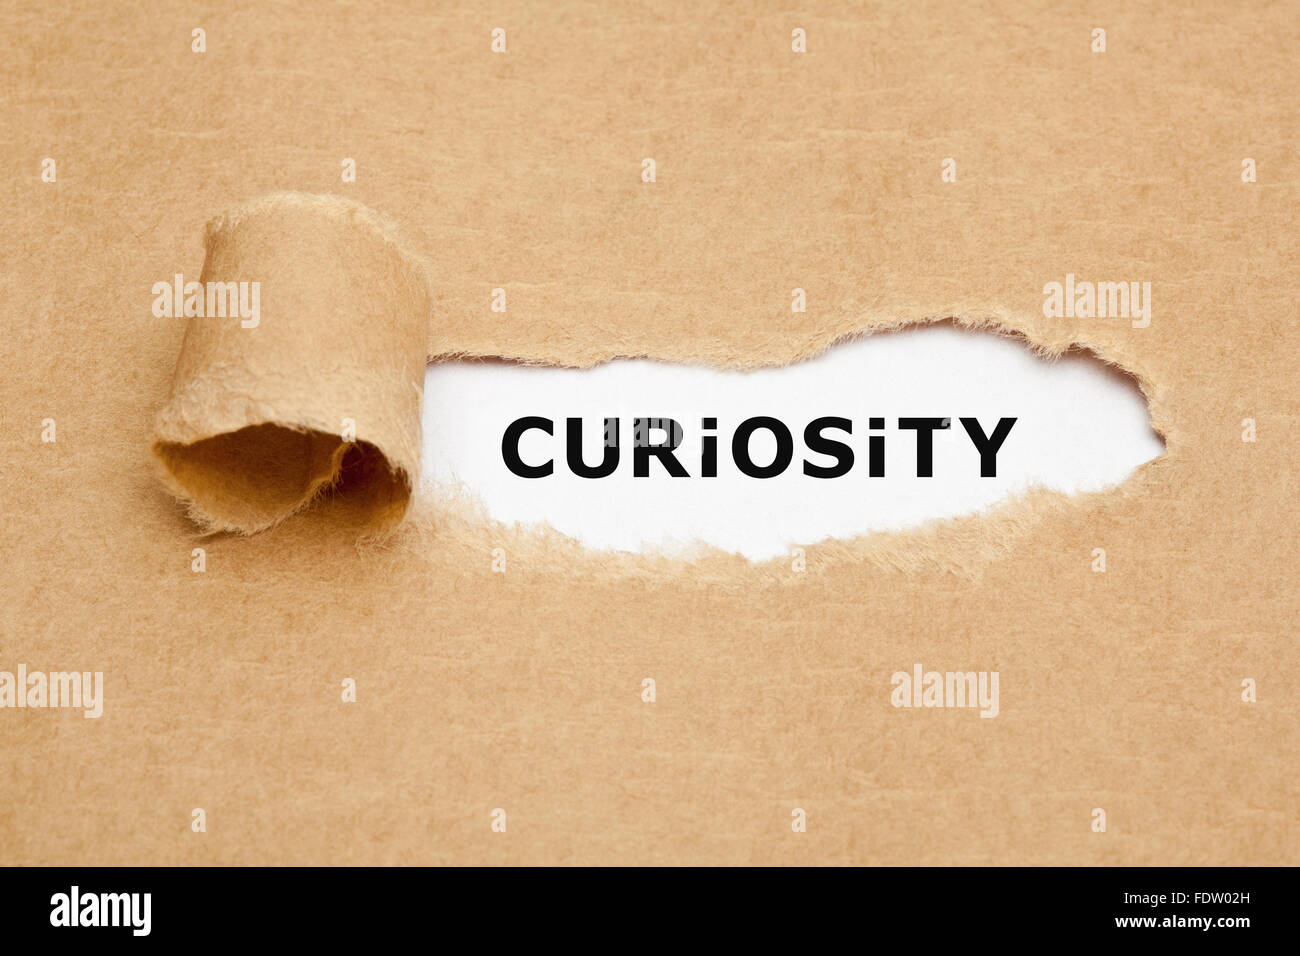 Das Wort Neugier erscheint hinter zerrissenes braunen Papier. Neugier ist der Wunsch zu lernen oder erfahren Sie mehr über etwas oder jemanden. Stockfoto